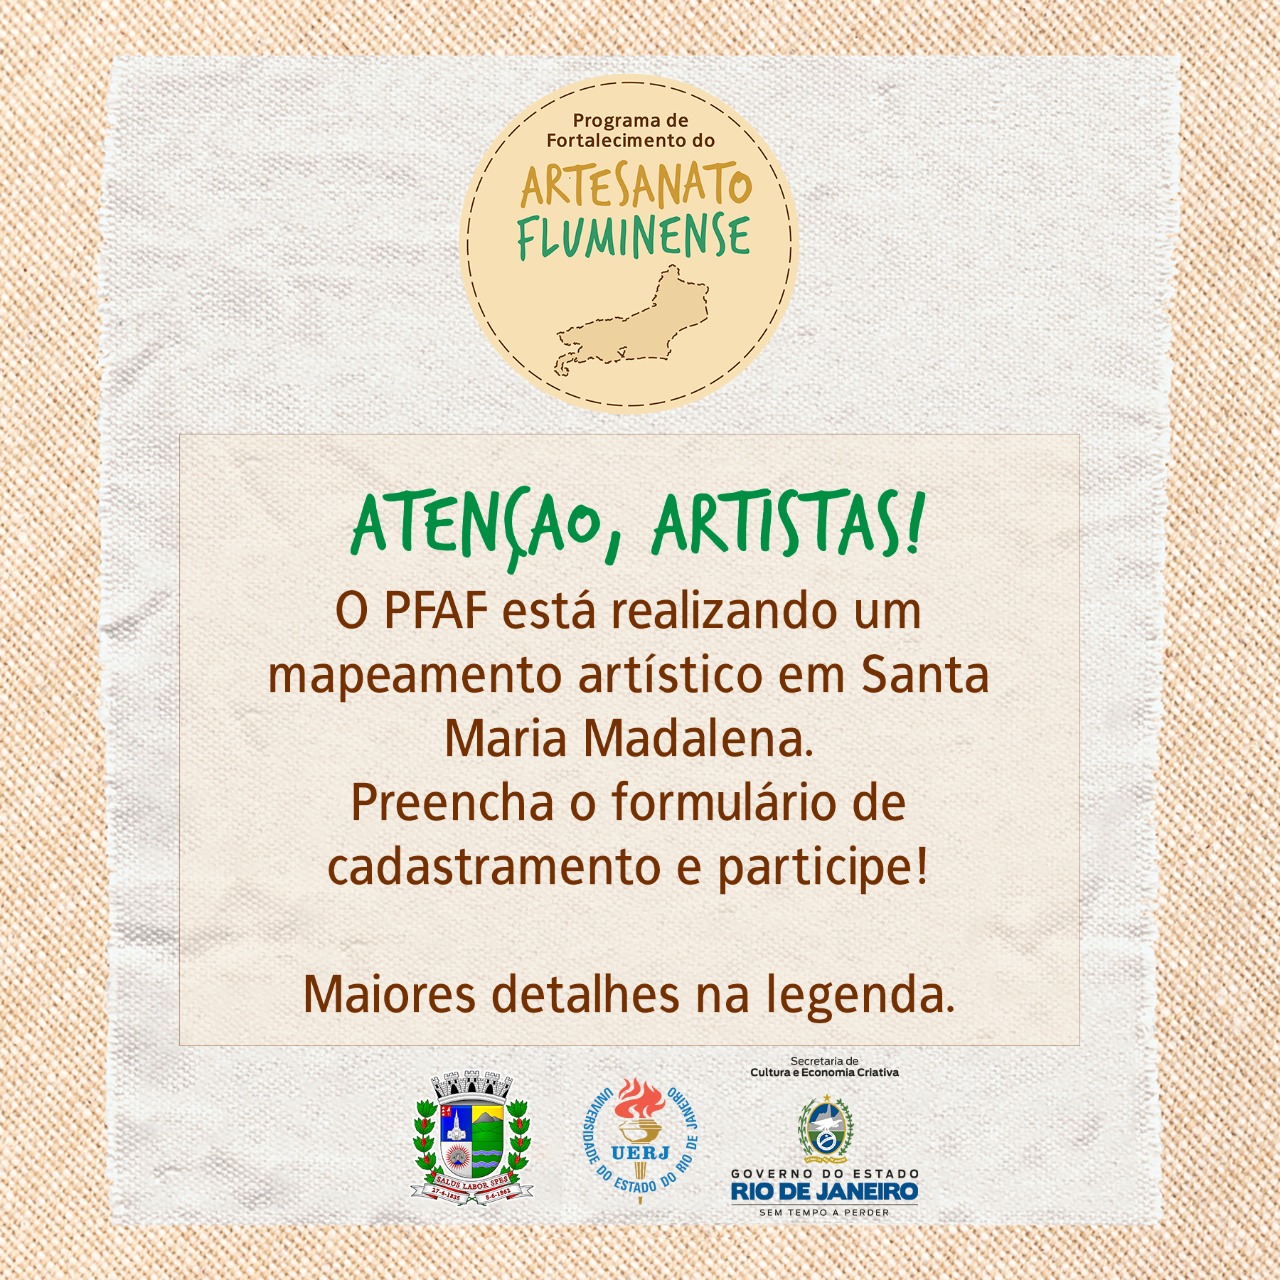 Cadastro no Programa de Fortalecimento do Artesanato Fluminense vai até 11 de novembro